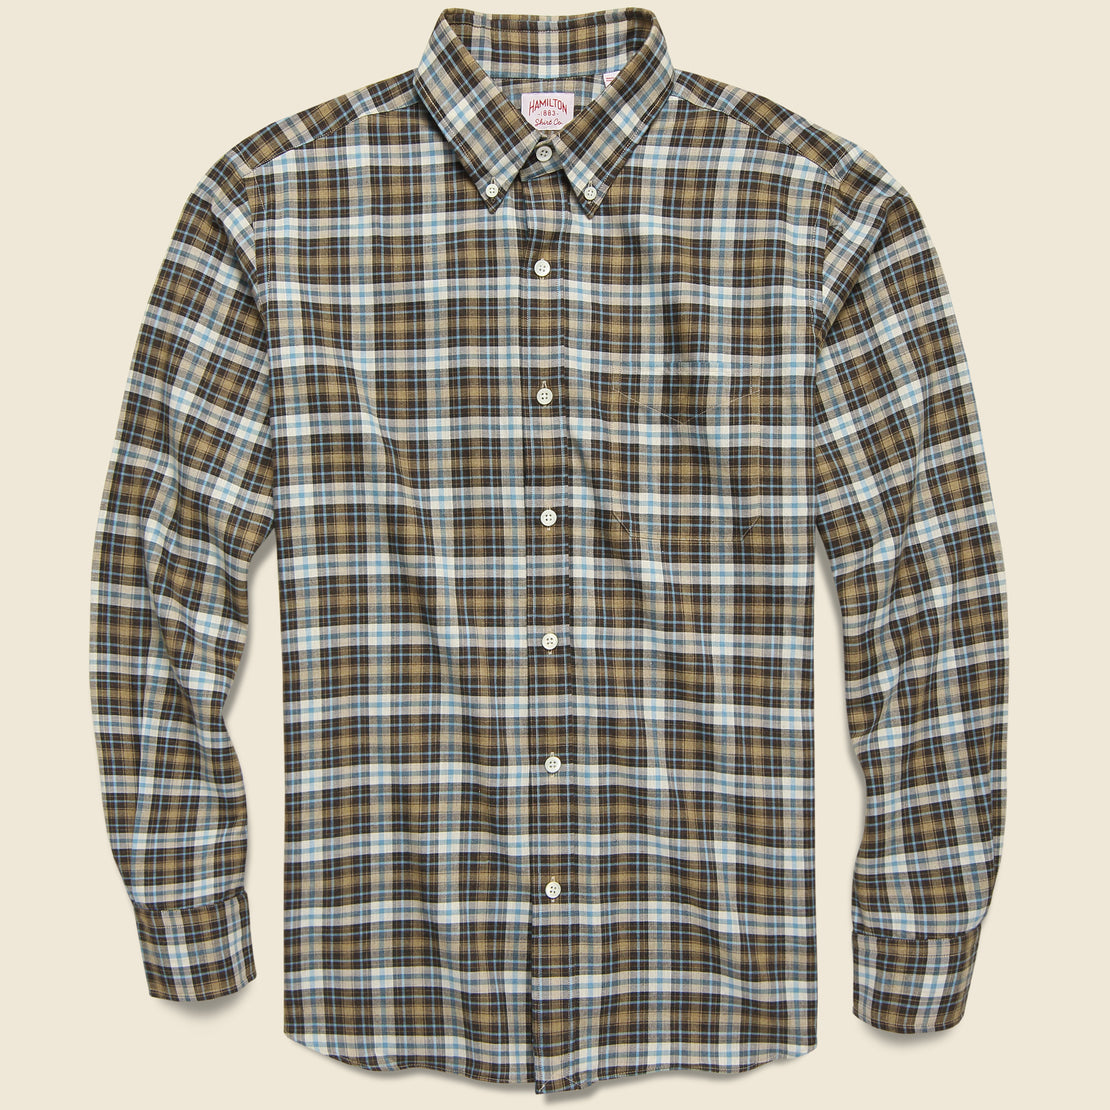 Hamilton Shirt Co. Plaid Flannel - Brown